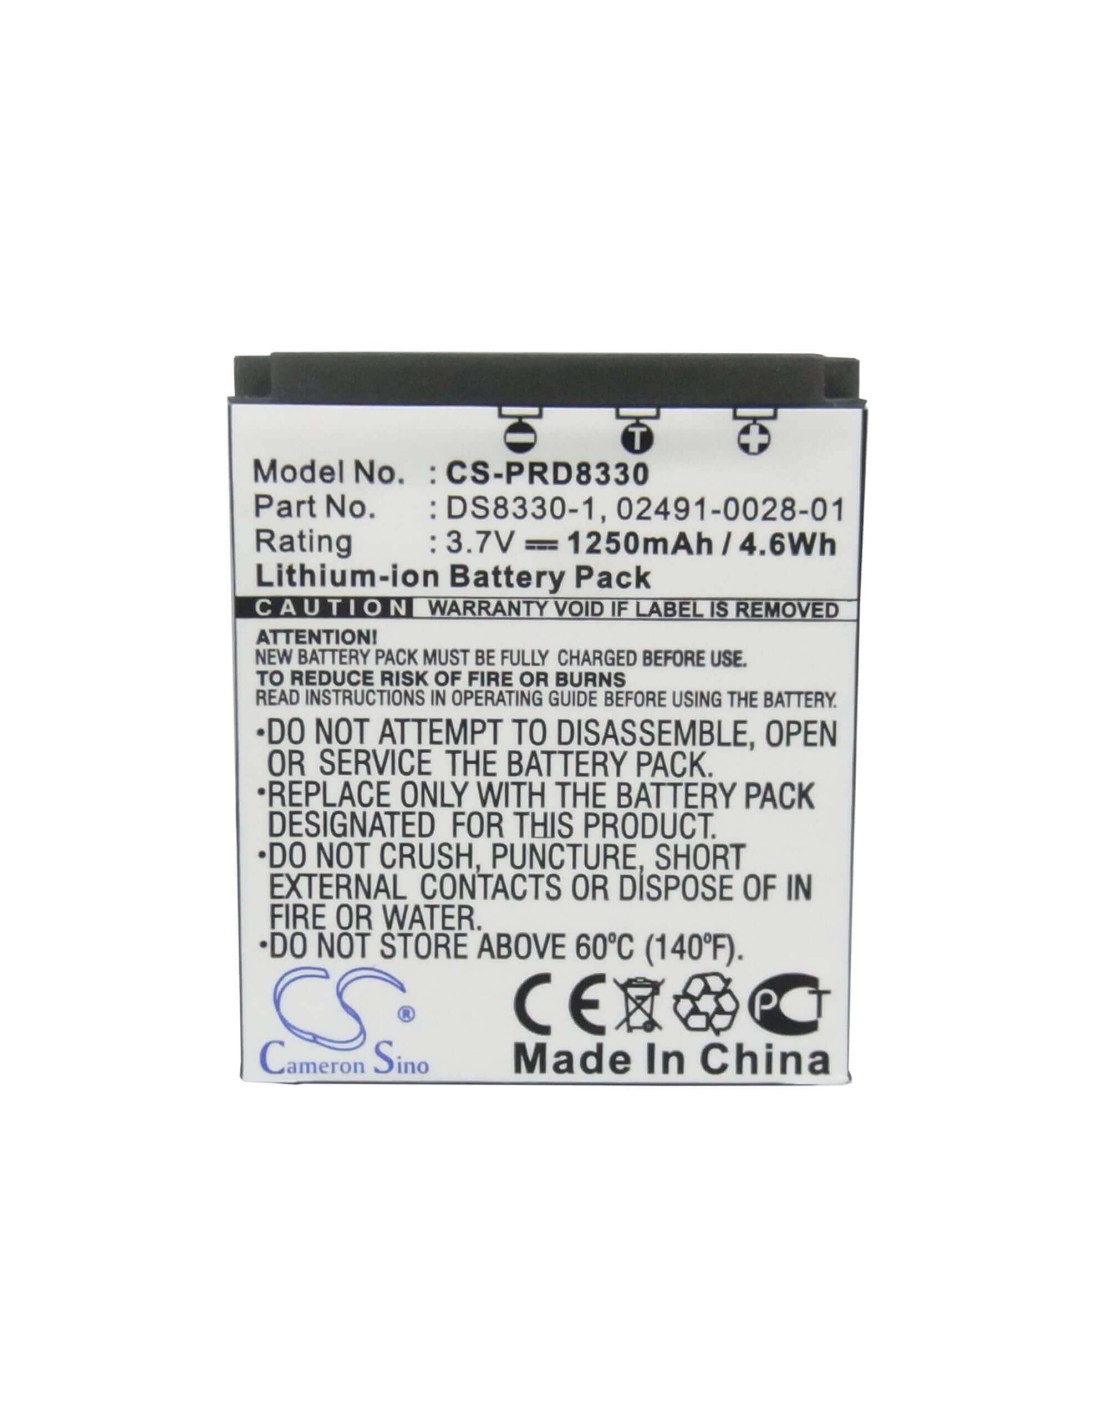 Battery for Premier Ds8330 3.7V, 1250mAh - 4.63Wh